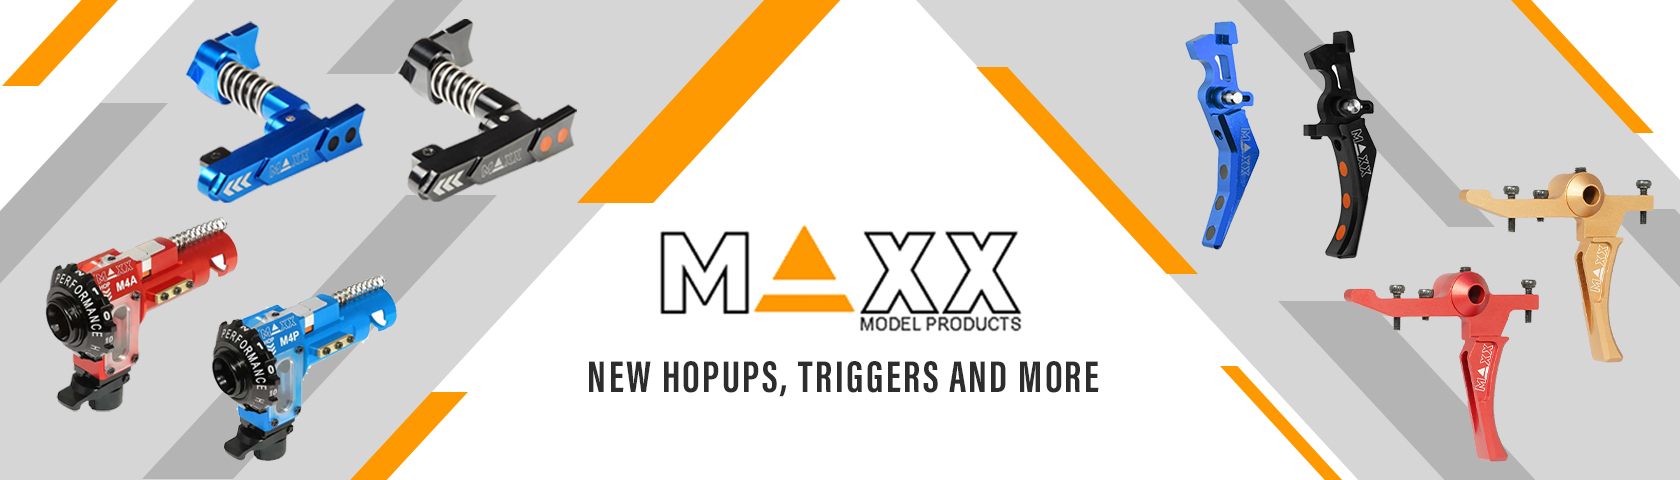 Maxx New Arrivals